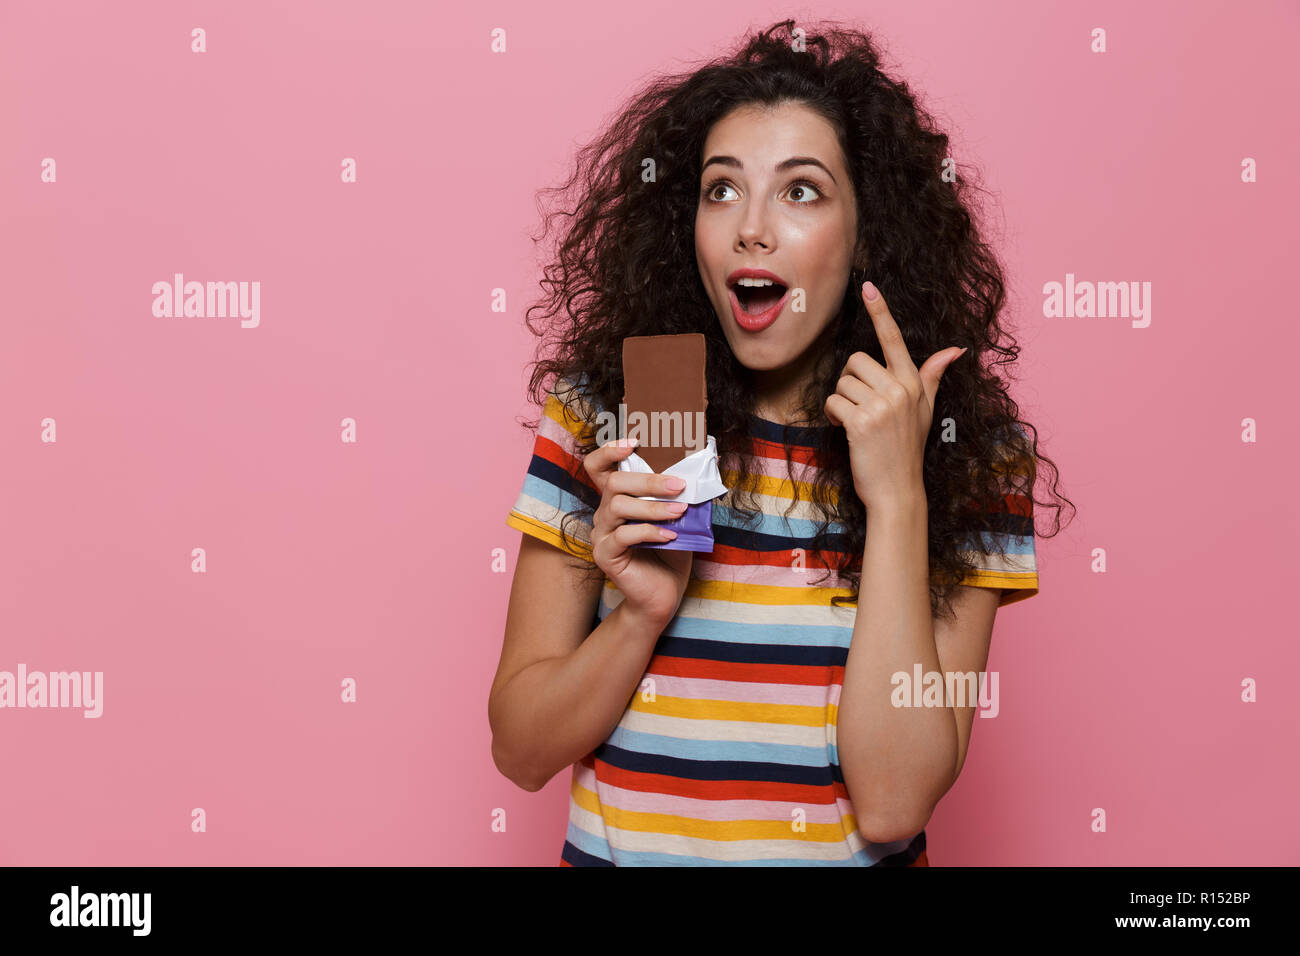 Photo de jolie femme 20s avec des cheveux bouclés tenant une barre de chocolat plus isolé sur fond rose Banque D'Images